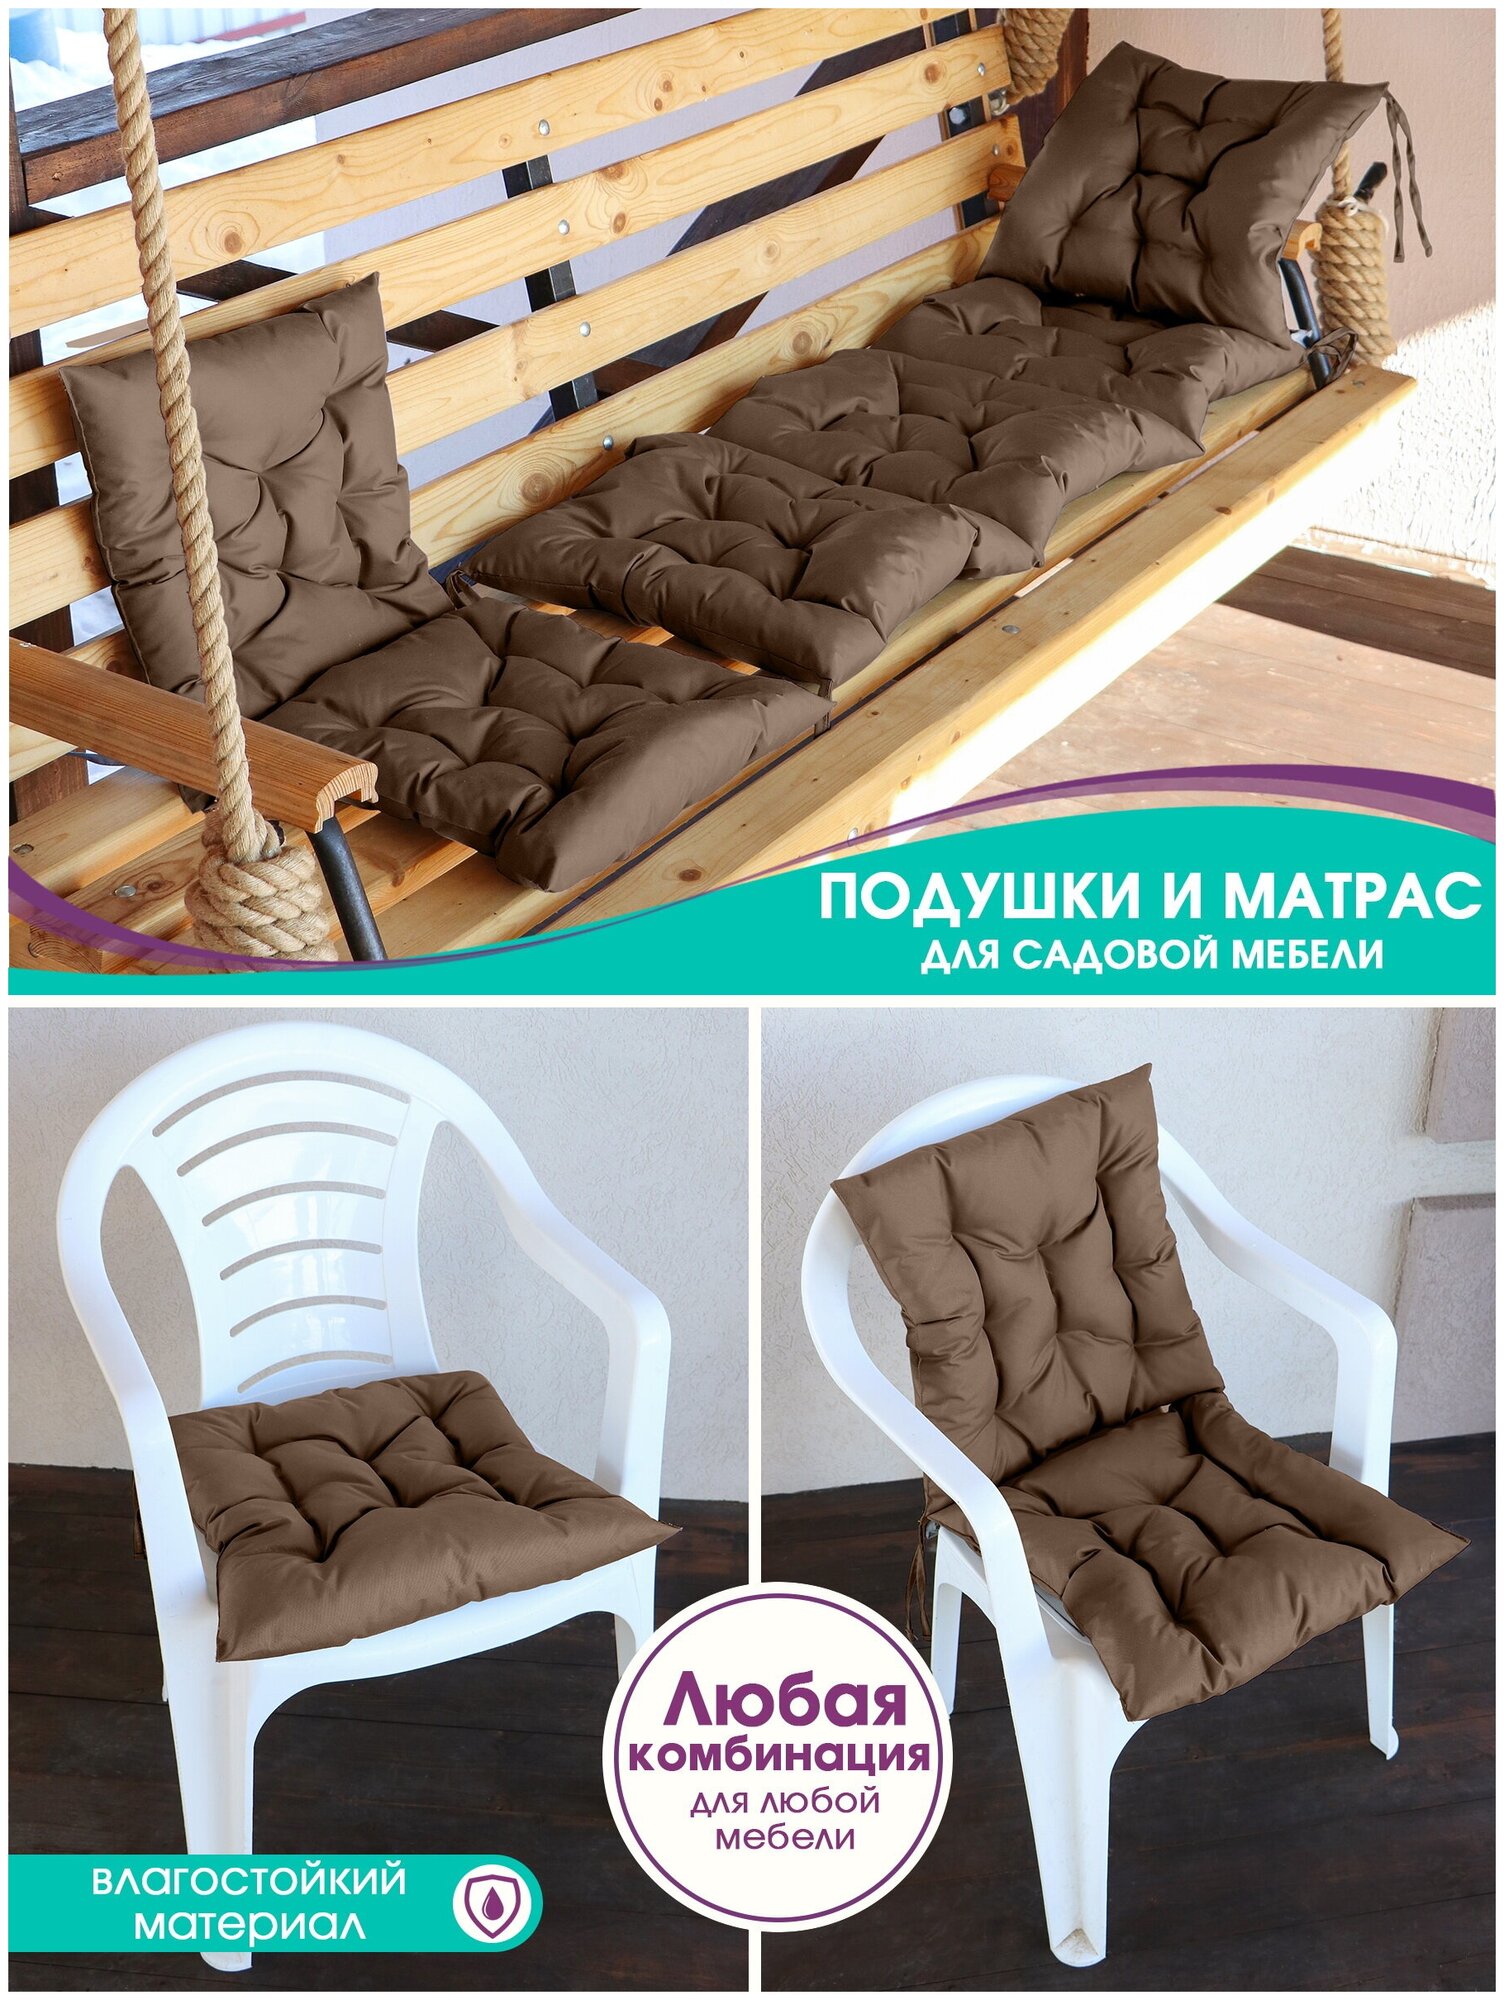 Подушки для садовой мебели Bio-Line, на стул, кресло, для качели, водонепроницаемая, на завязках, 44*44 см, шоколад,1шт